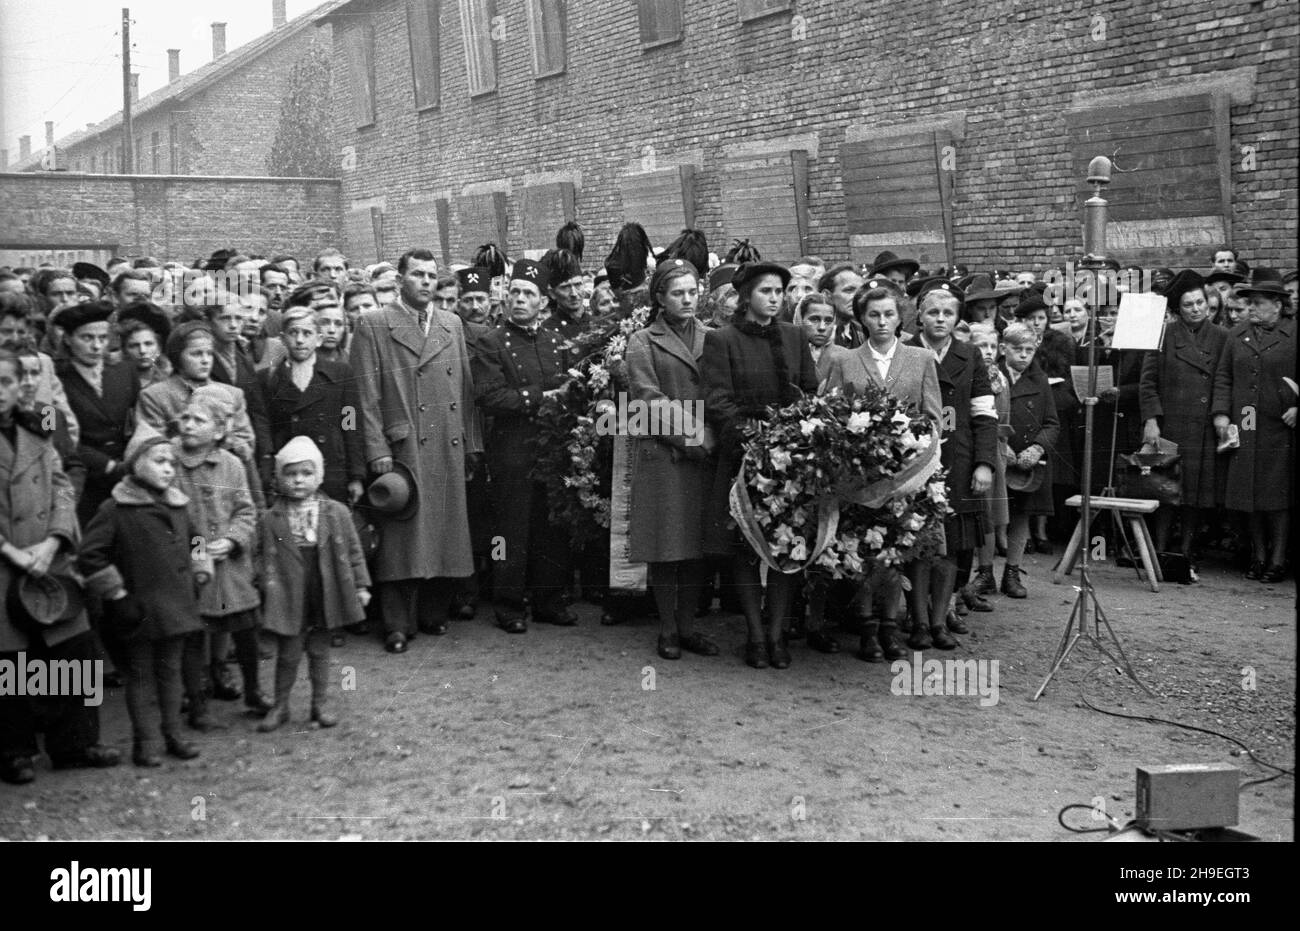 Oœwiêcim, 1947-11-01. By³y niemiecki obóz koncentracyjny Auschwitz-Birkenau. Nz. uroczystoœæ z³o¿enia wieñców przed œcian¹ œmierci na dziedziñcu bloku XI, gdzie dokonywano egzekucji. ps/gr  PAP      Oswiecim, Nov. 1, 1947. Former concentration camp Auschwitz-Birkenau. Pictured: a wreath laying ceremony at the death wall, the execution site, on the yard of the 11th block.  ps/gr  PAP Stock Photo